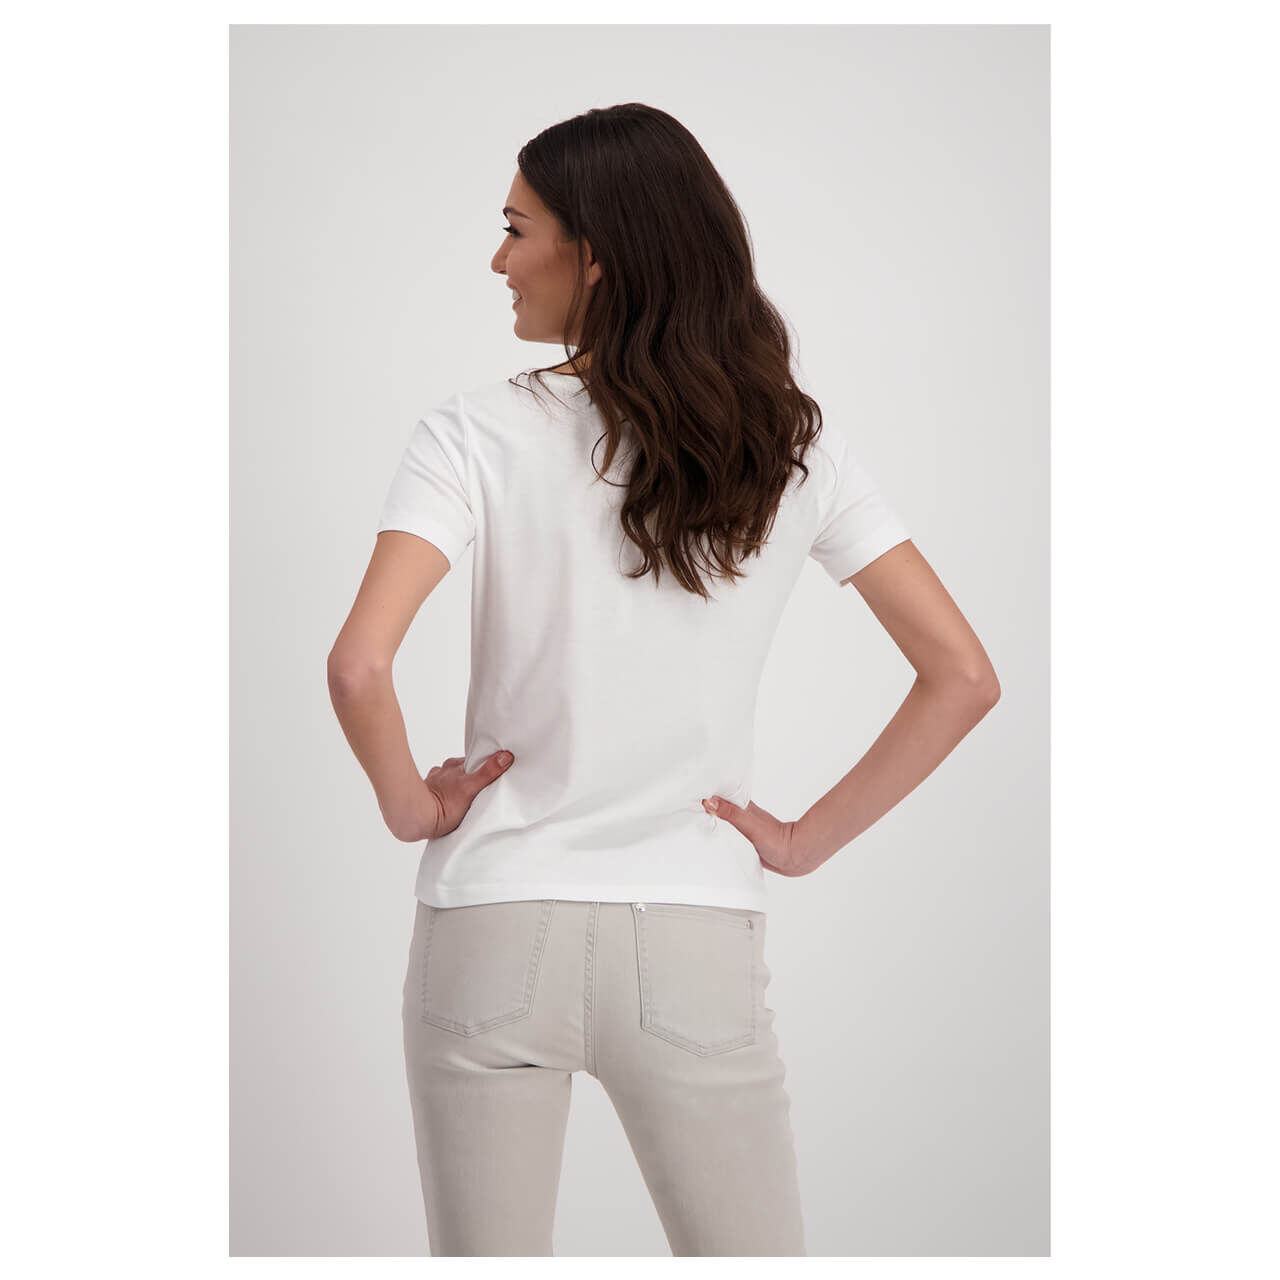 Monari Damen T-Shirt off white glitter